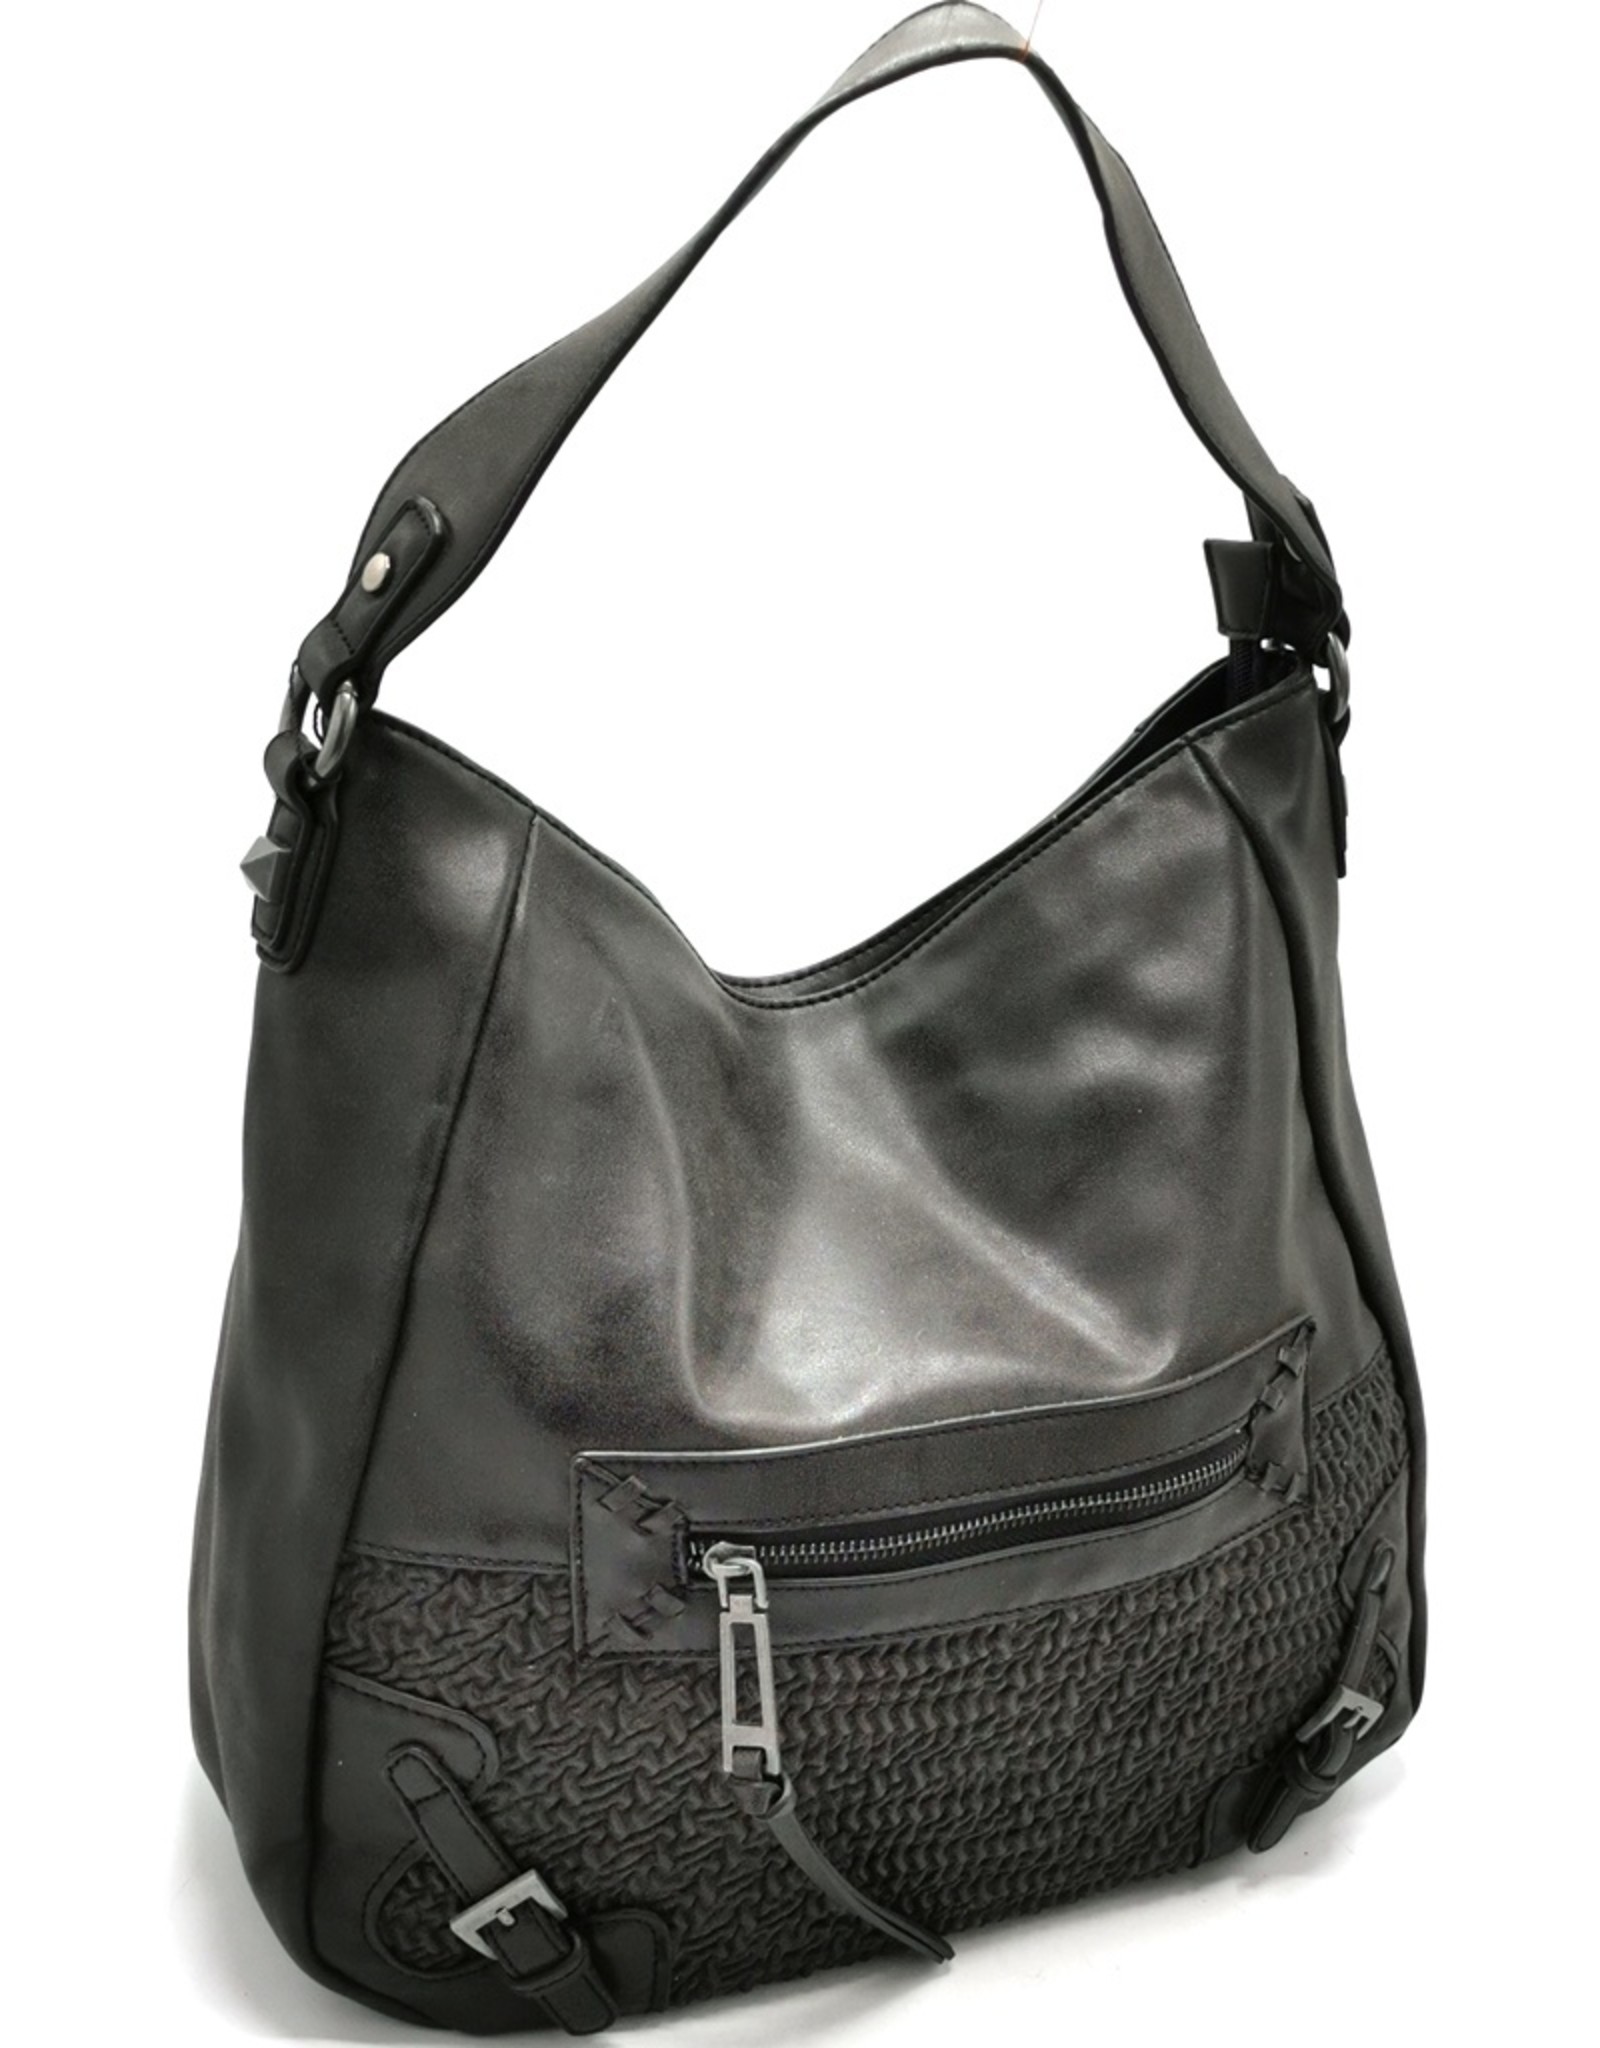 Xuna Fashion bags - Xuna Shoulder bag Joffre Brushed Black